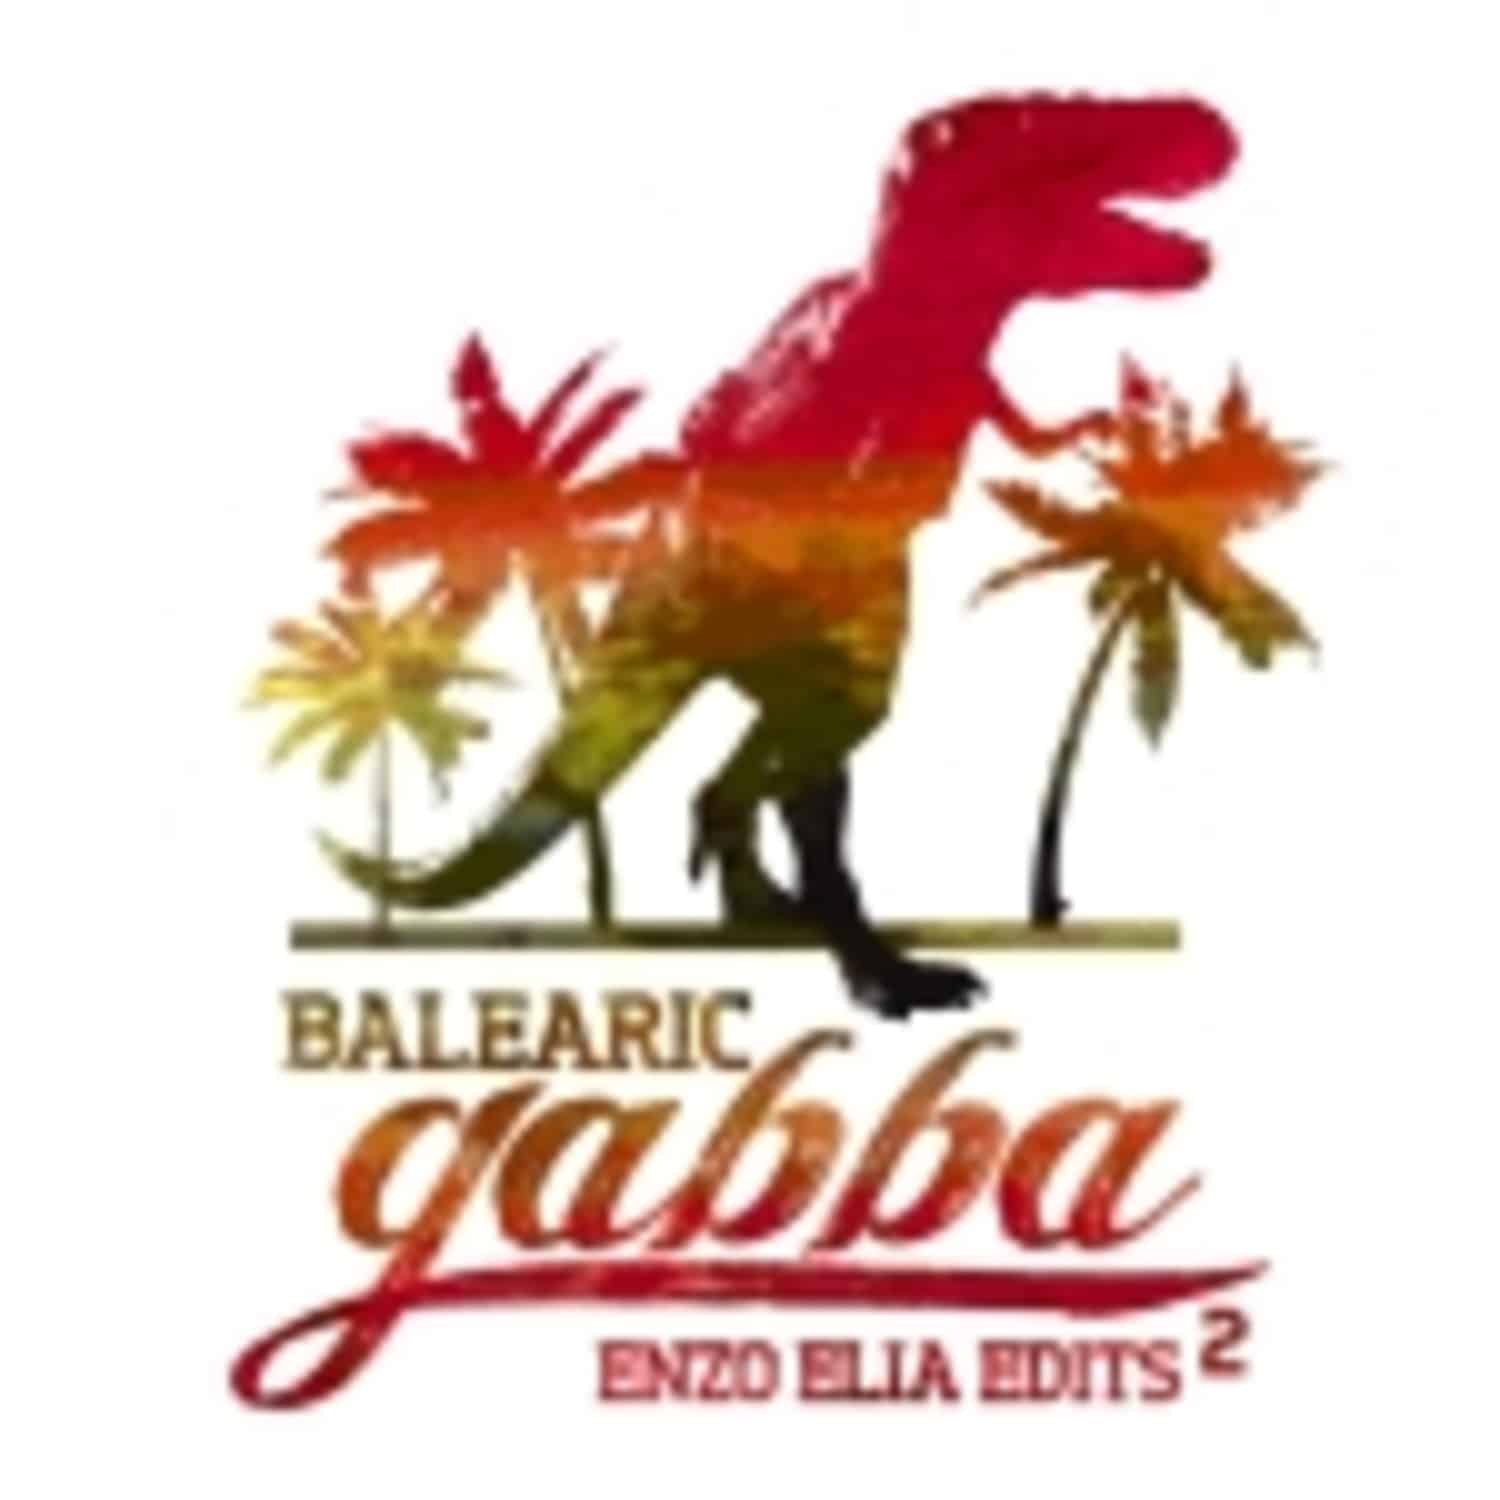 Enzo Elia - BALEARIC GABBA EDITS VOL.2